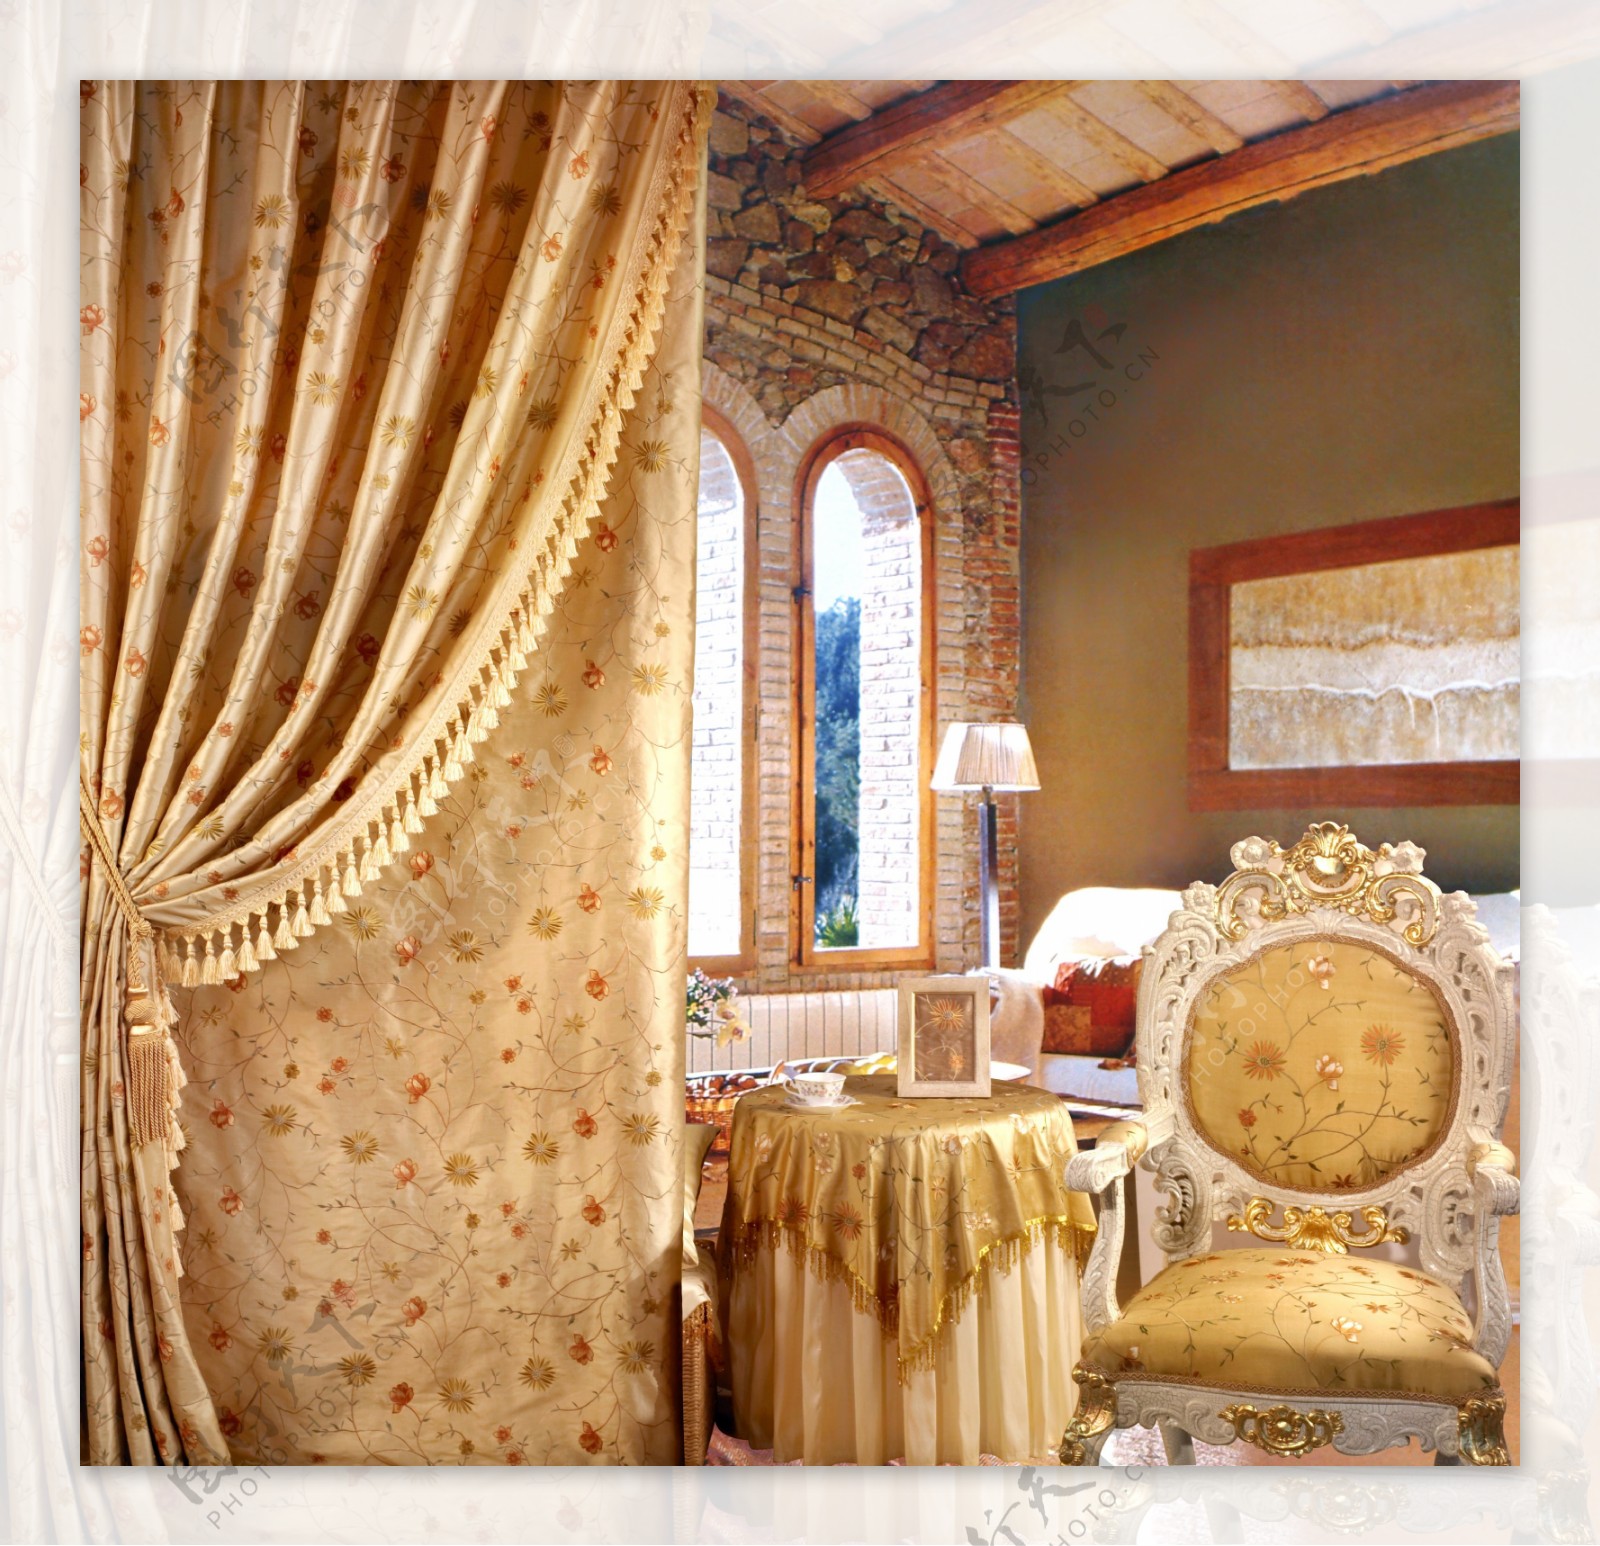 家居生活窗帘床上用品室内豪华舒适休闲时尚经典家具墙纸花纹沙发配饰装潢